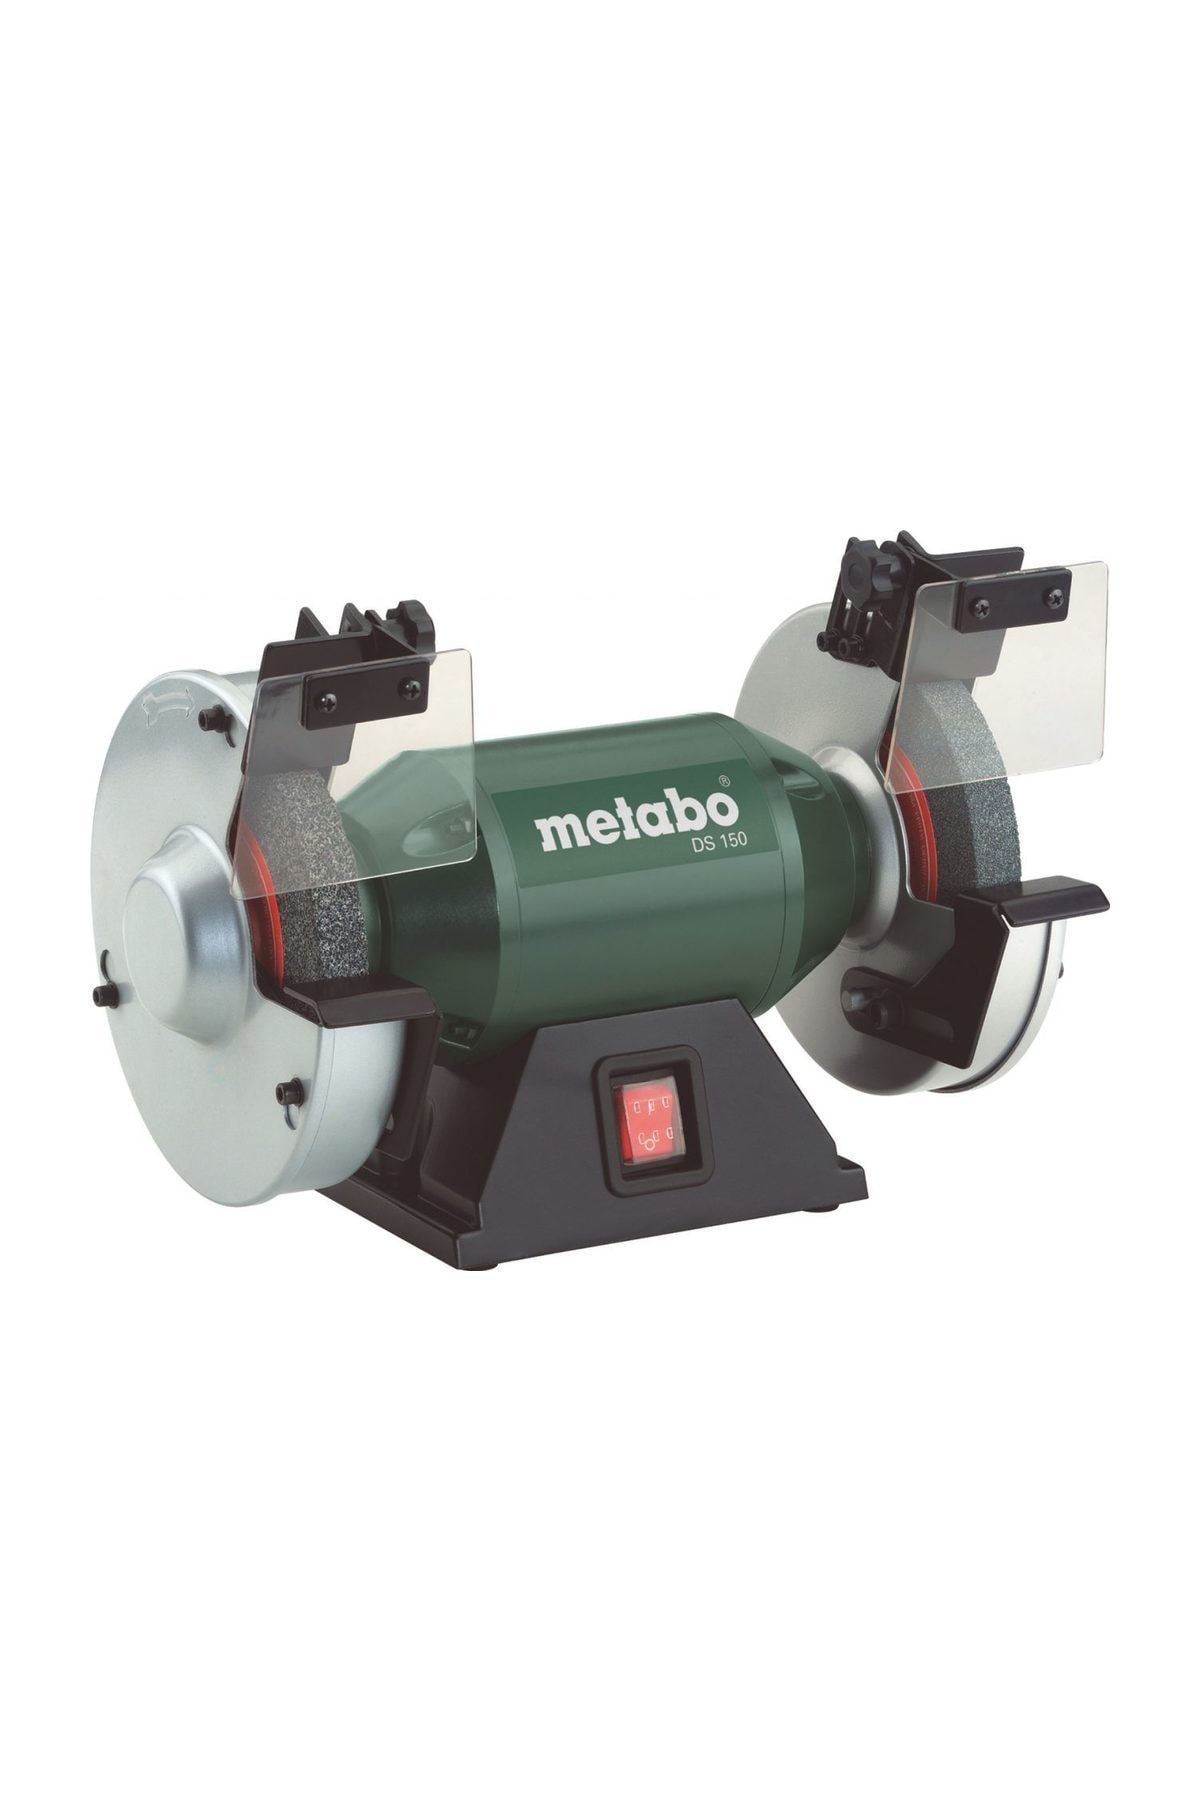 Metabo DS 150 Taş Motoru 350 Watt 150 mm